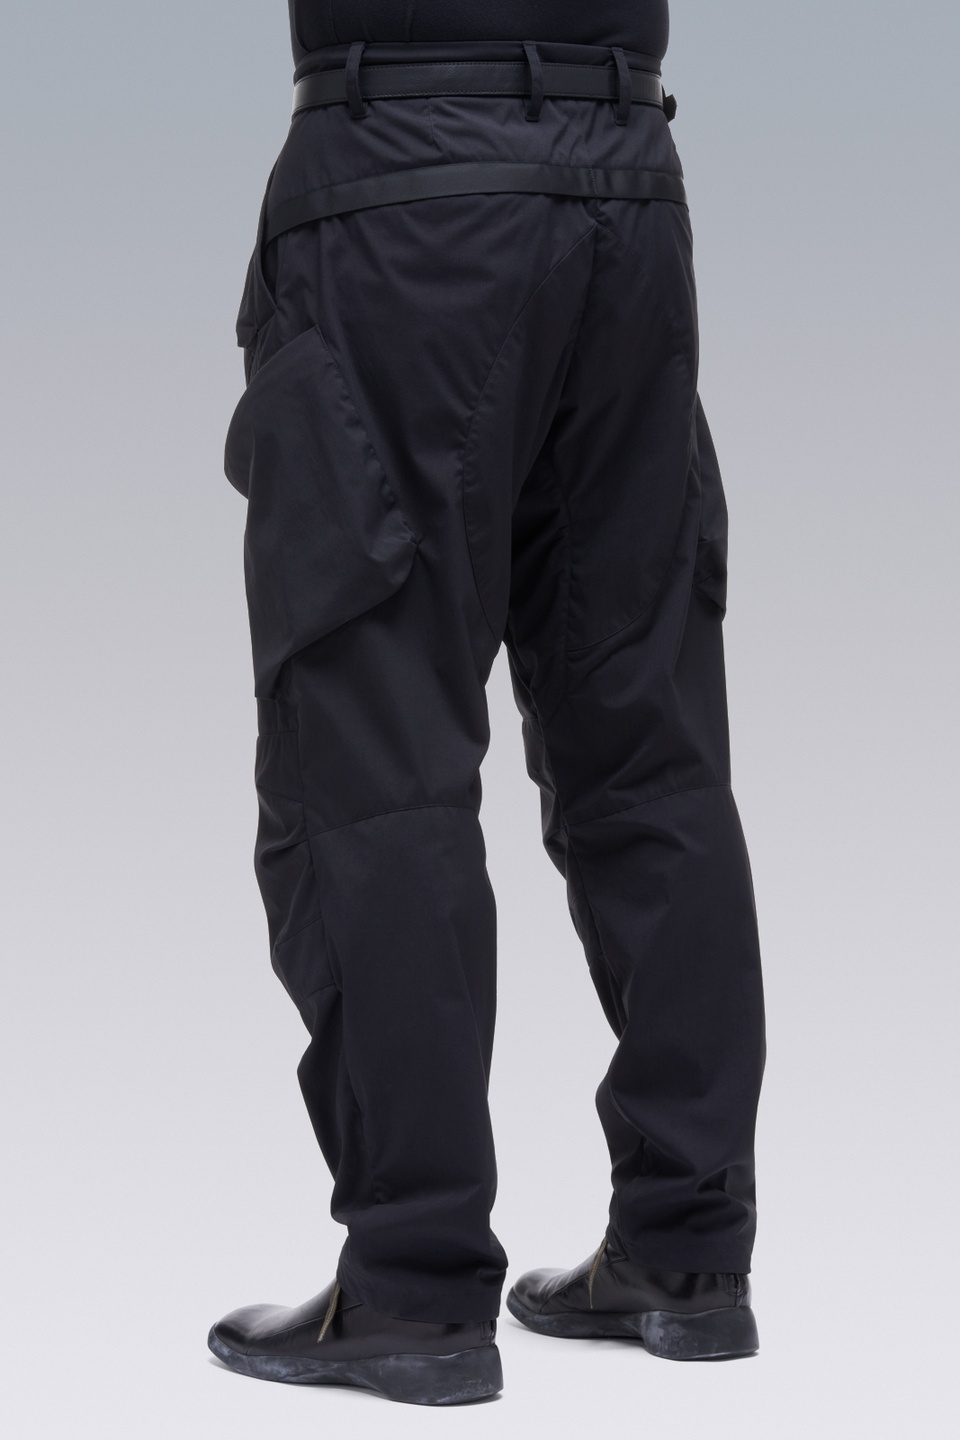 P24A-E Encapsulated Nylon Articulated BDU Trouser Black - 9